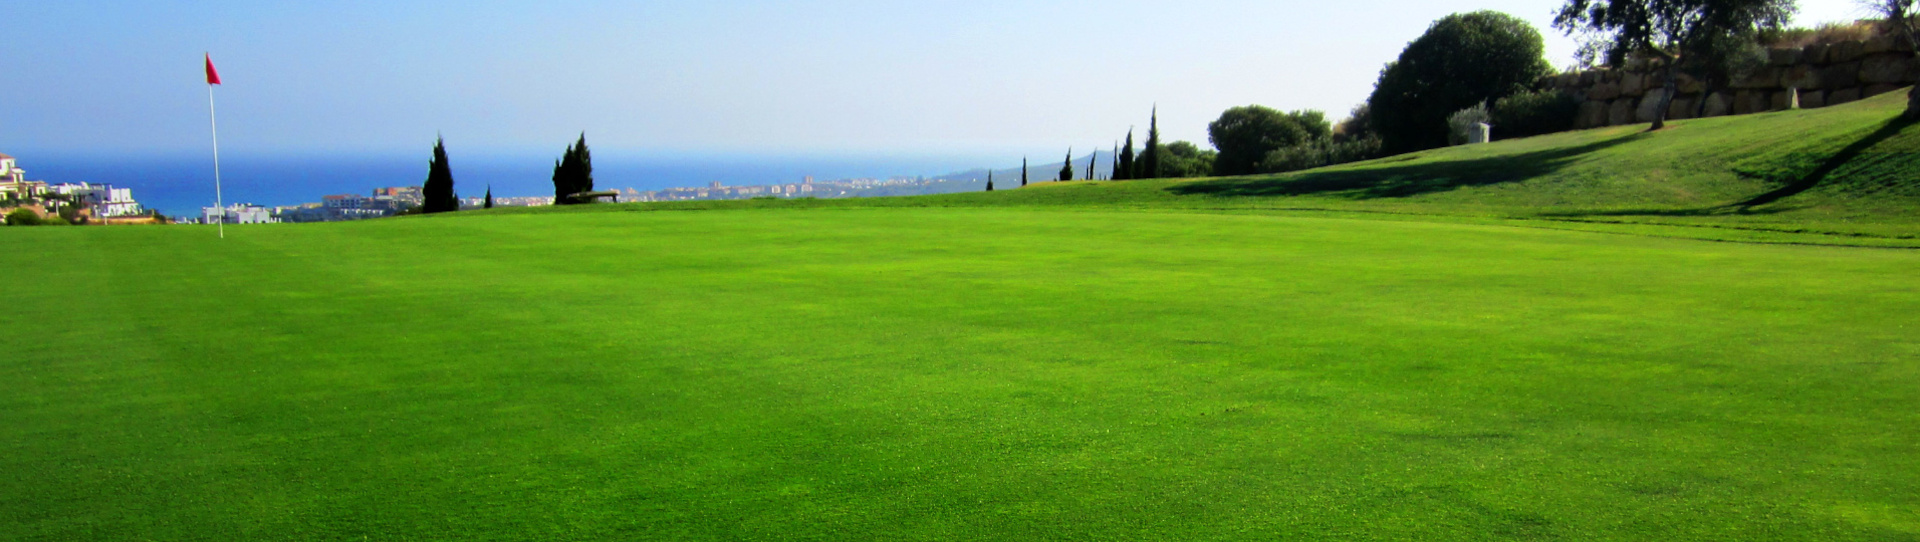 Spain golf courses - Doña Julia Golf course - Photo 2